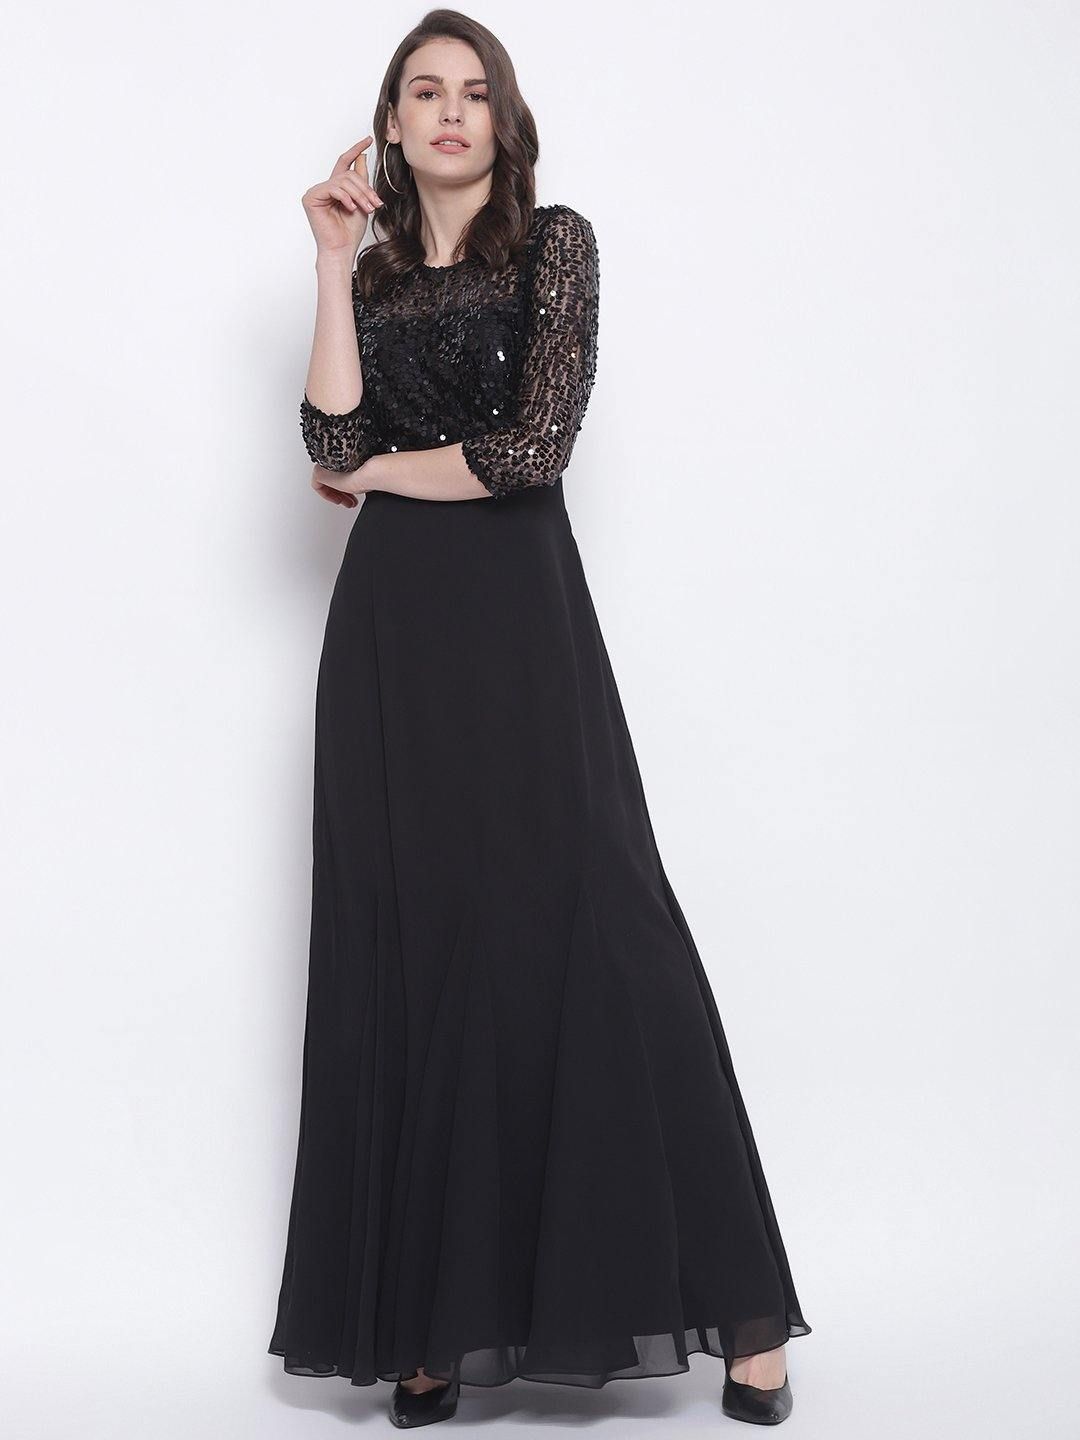 Black Sequin Ball Gown Wedding Dress – Lisposa